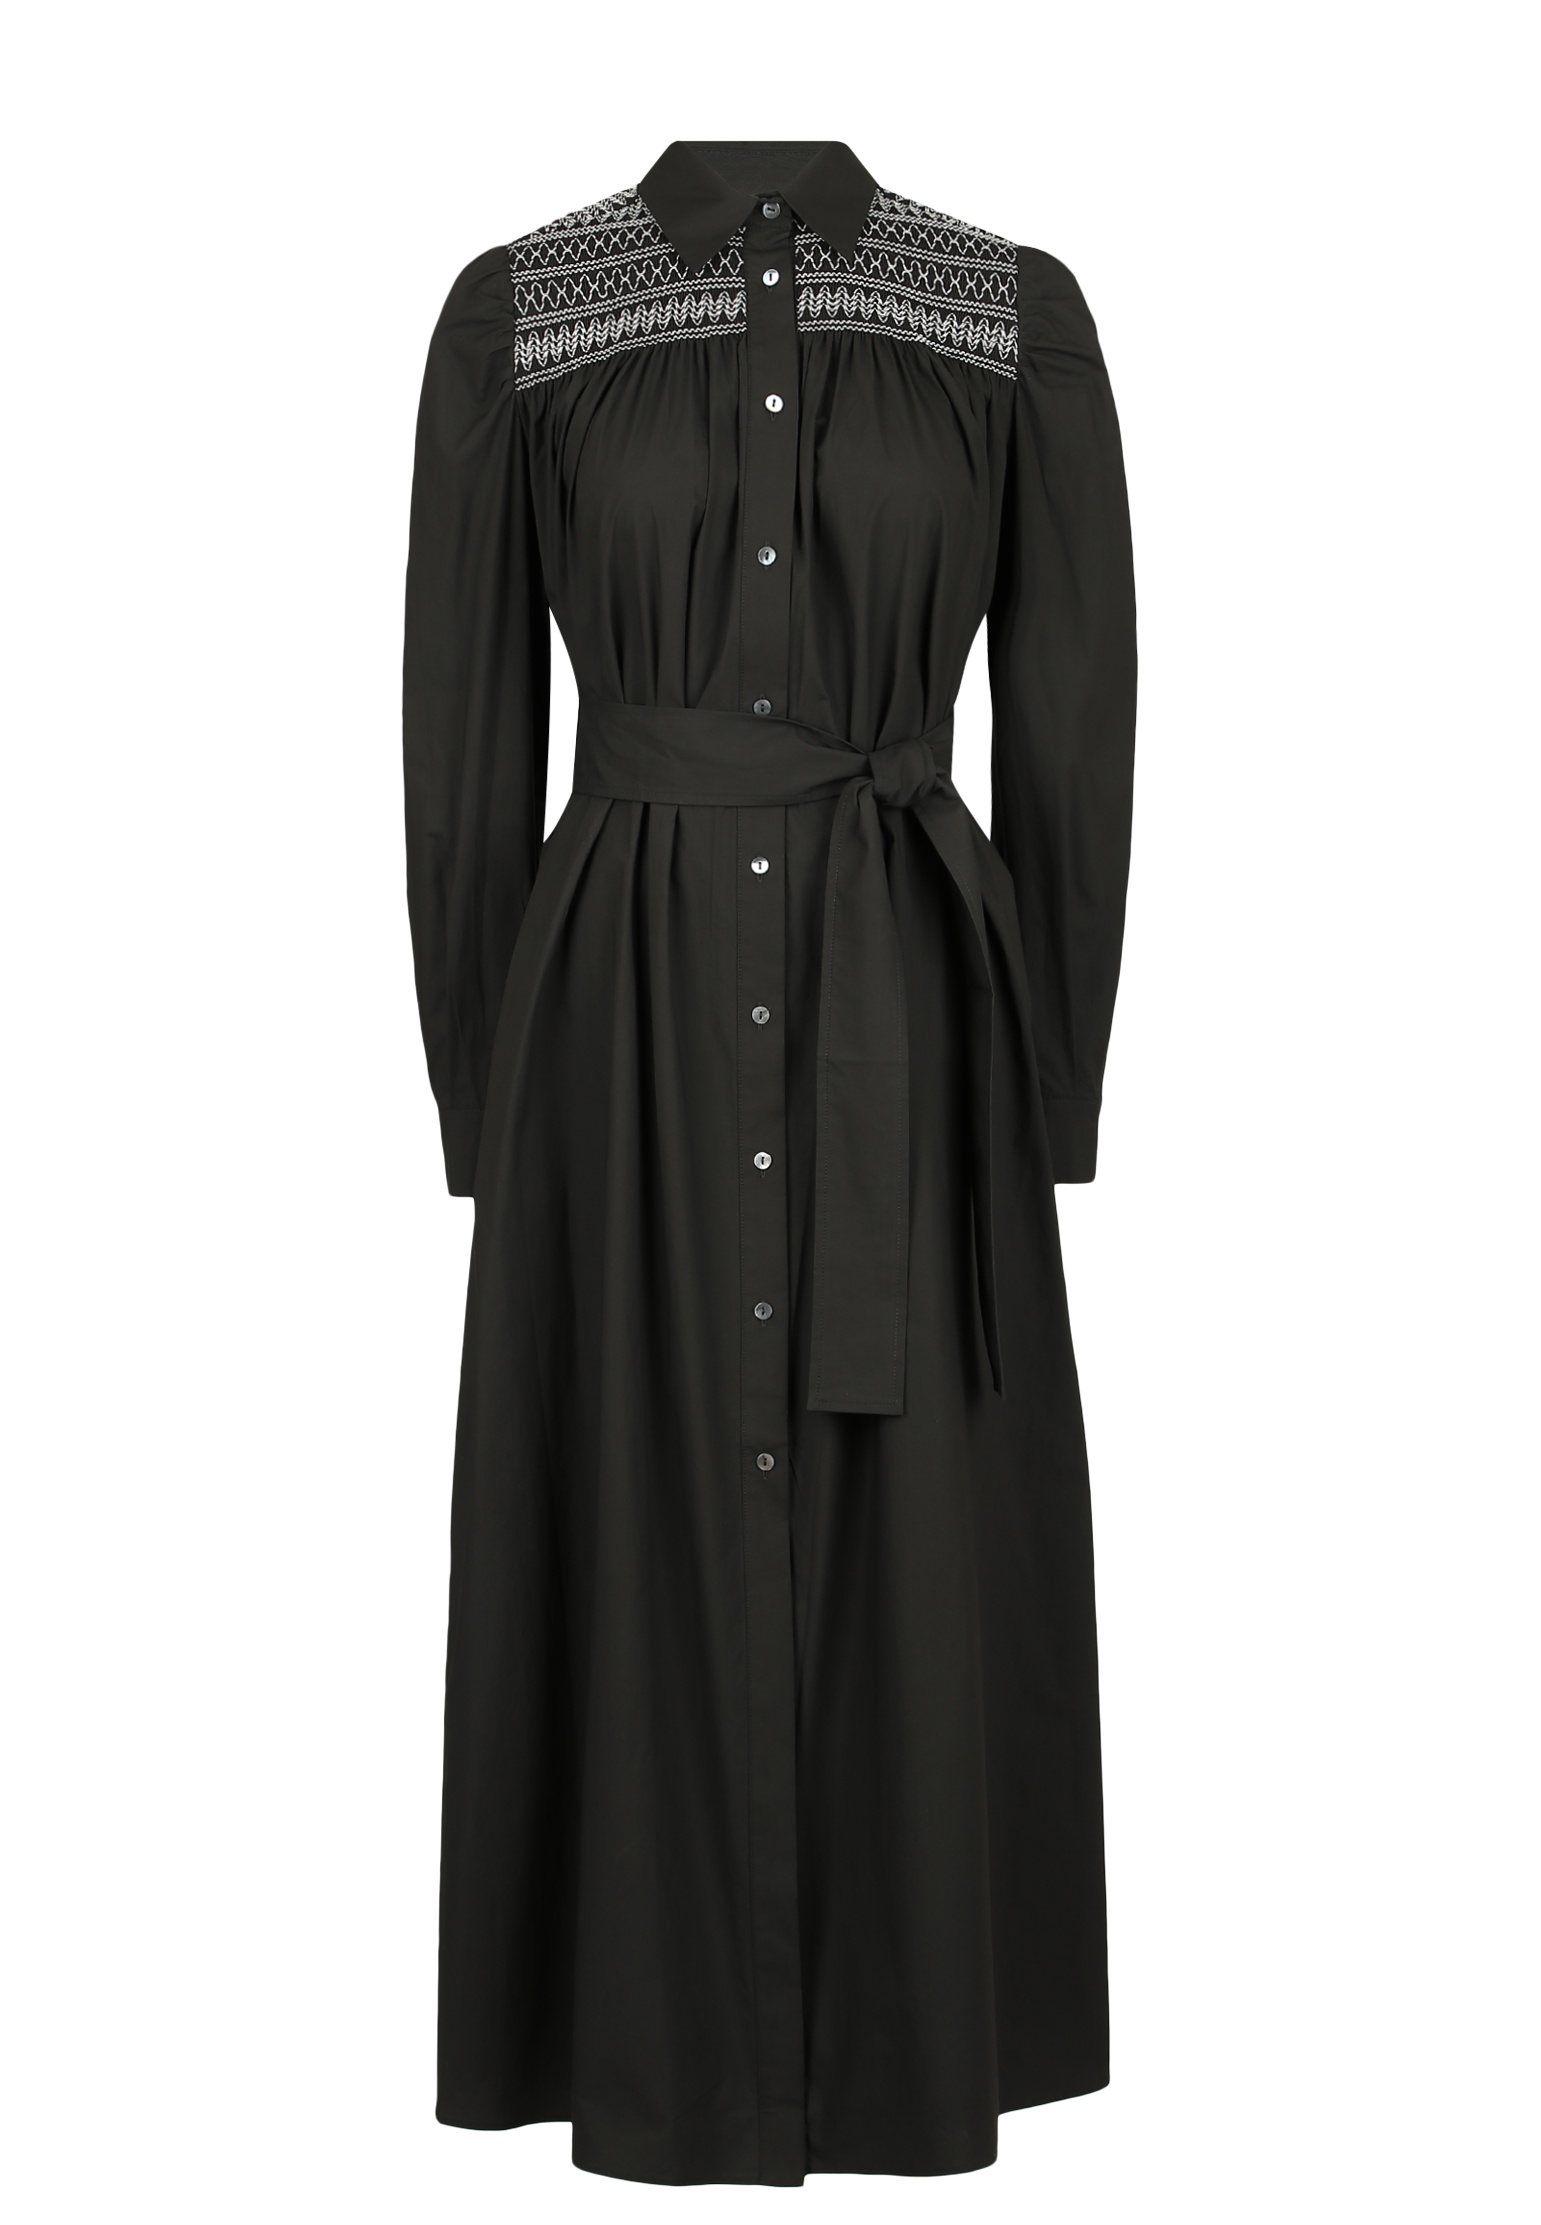 Платье женское P.A.R.O.S.H. 143590 черное M